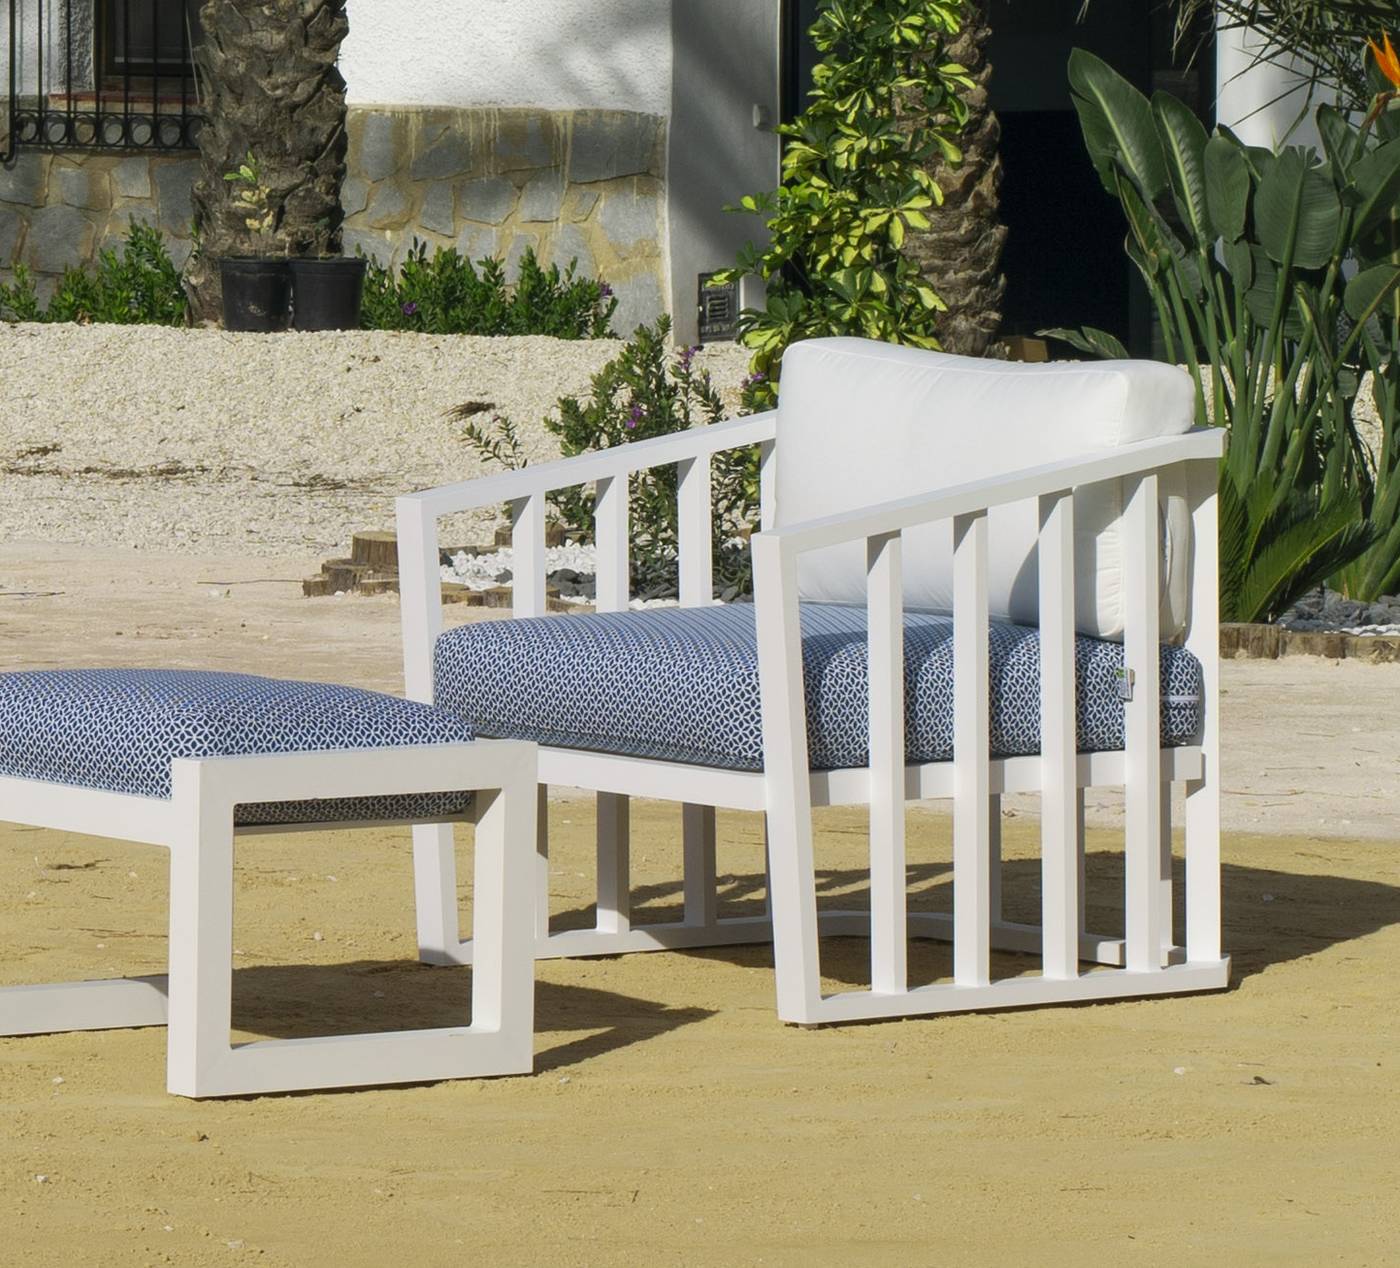 Set Aluminio Birmania-8 - Conjunto confort aluminio: 1 sofá 3 plazas + 2 sillones + 1 mesa de centro + cojines. Disponible en color blanco o antracita.